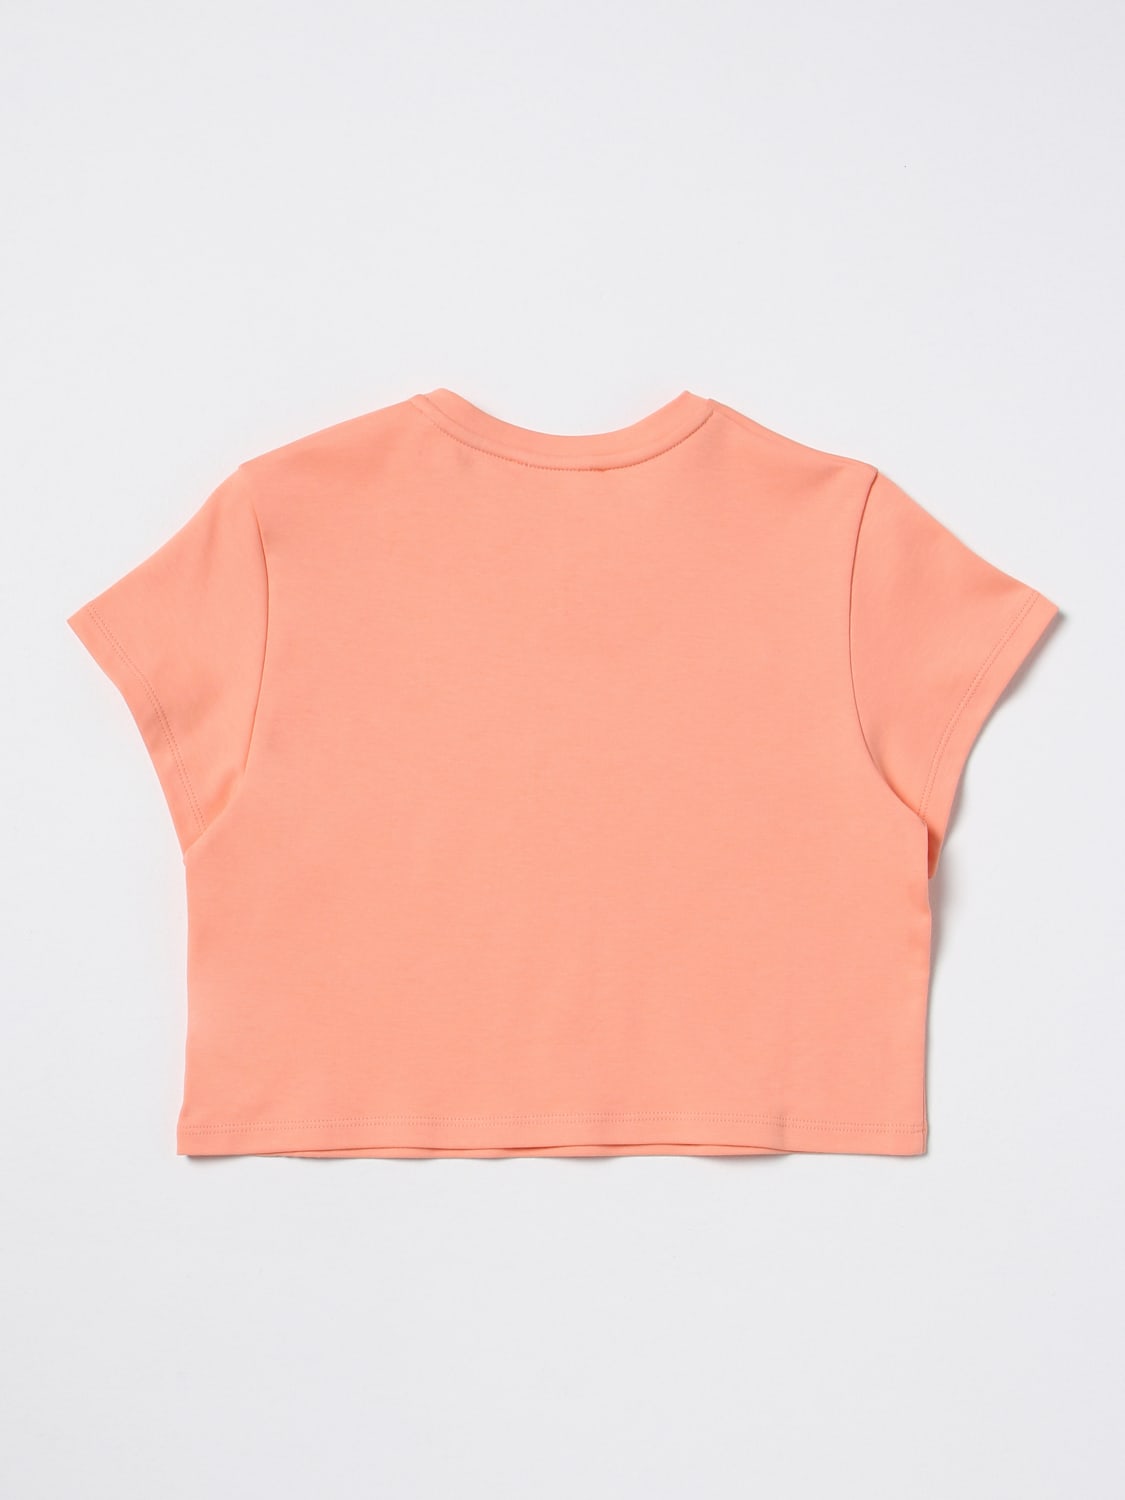 Camisetas naranjas para niña